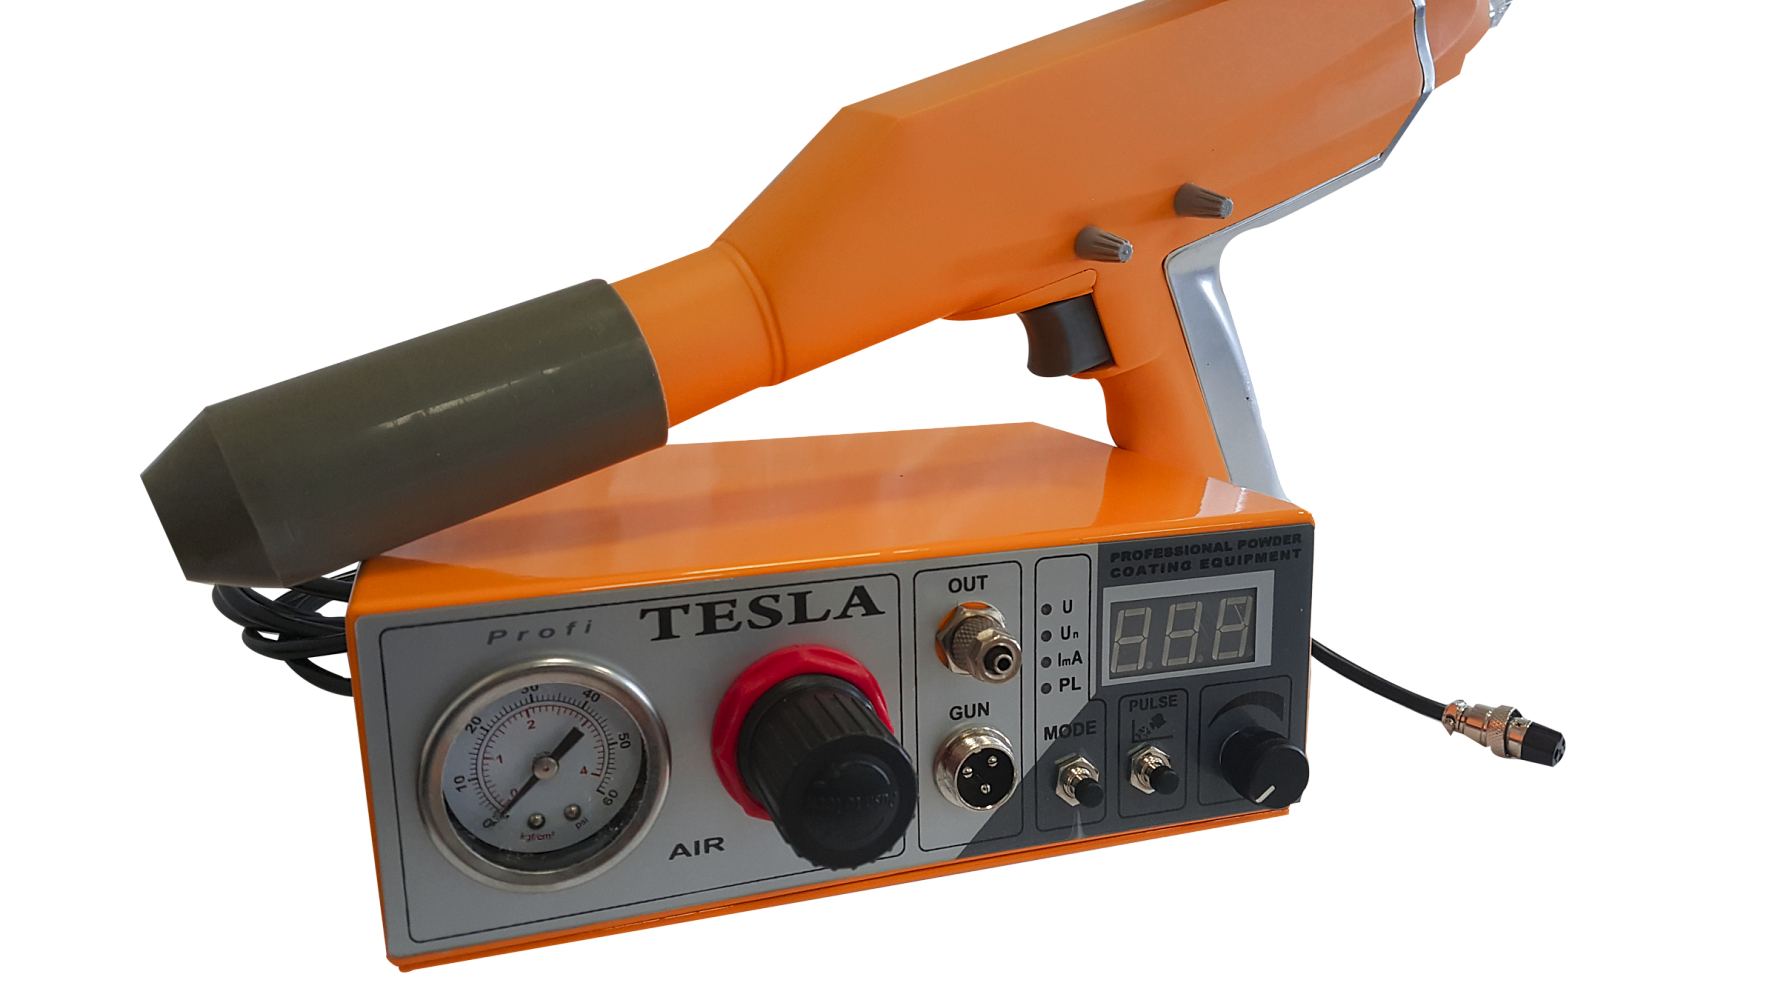 Tesla-PROFI: установка (оборудование) для порошковой покраски и электростатического напыления, распыления порошковых красок.